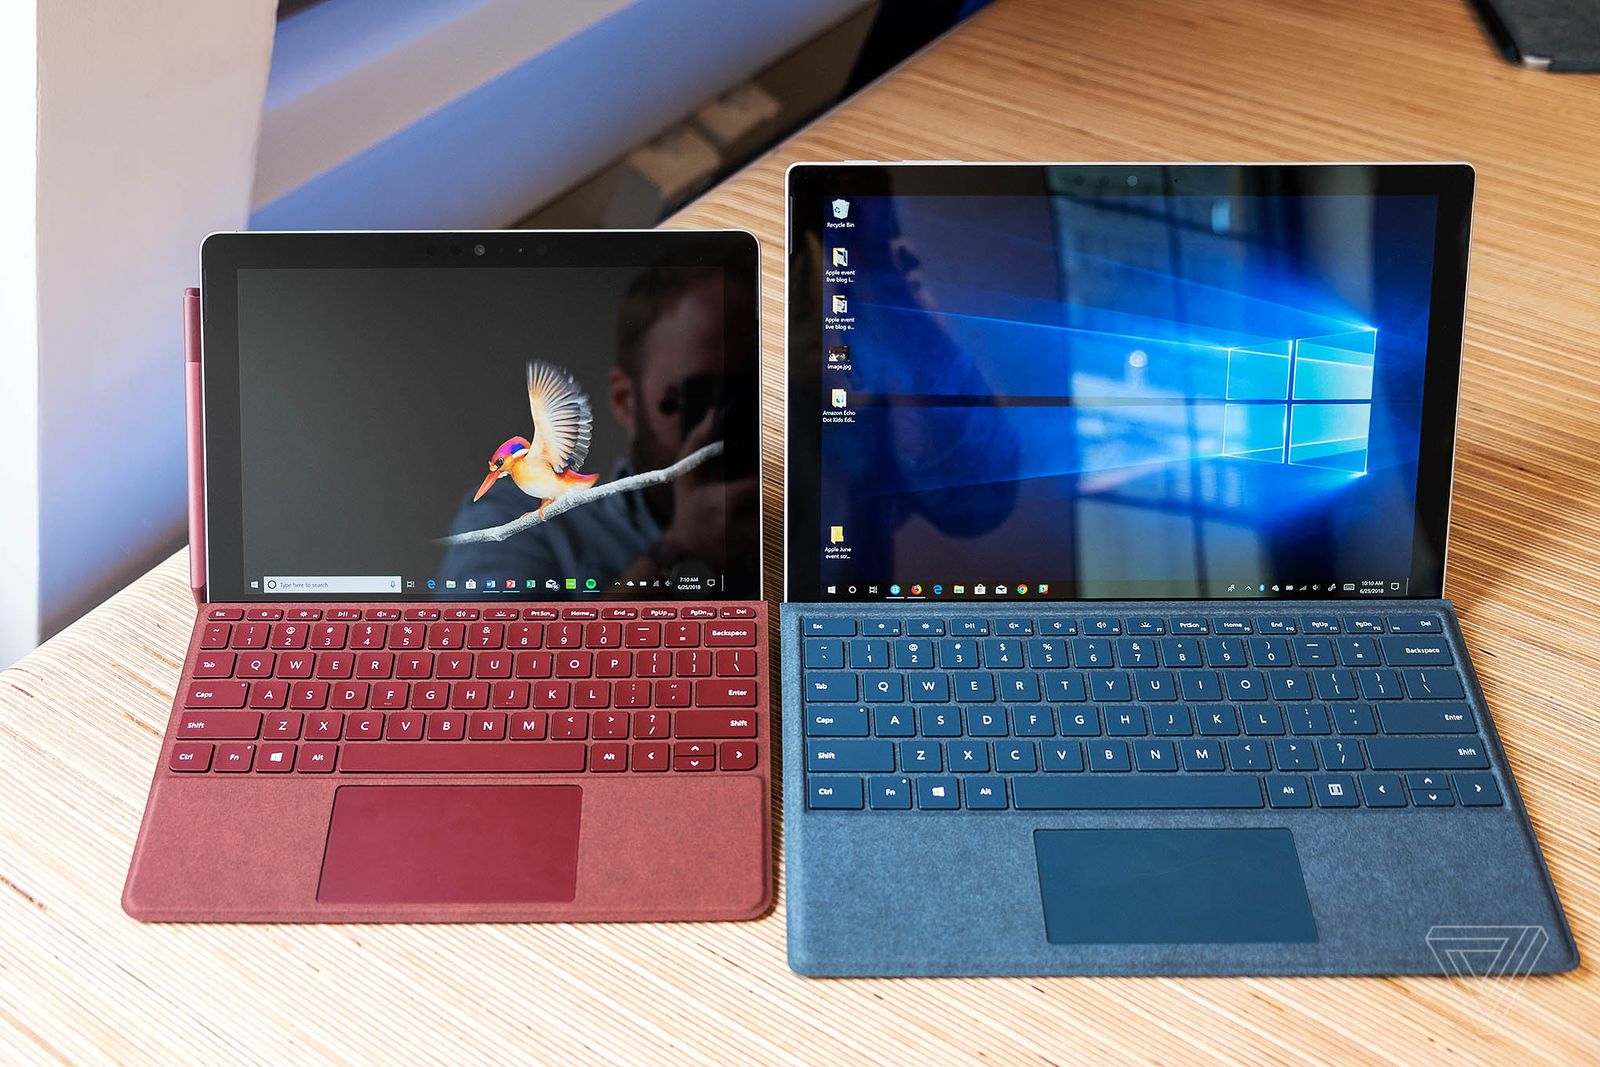 Microsoft chính thức ra mắt Surface Go giá rẻ
cạnh tranh trực tiếp với Apple iPad